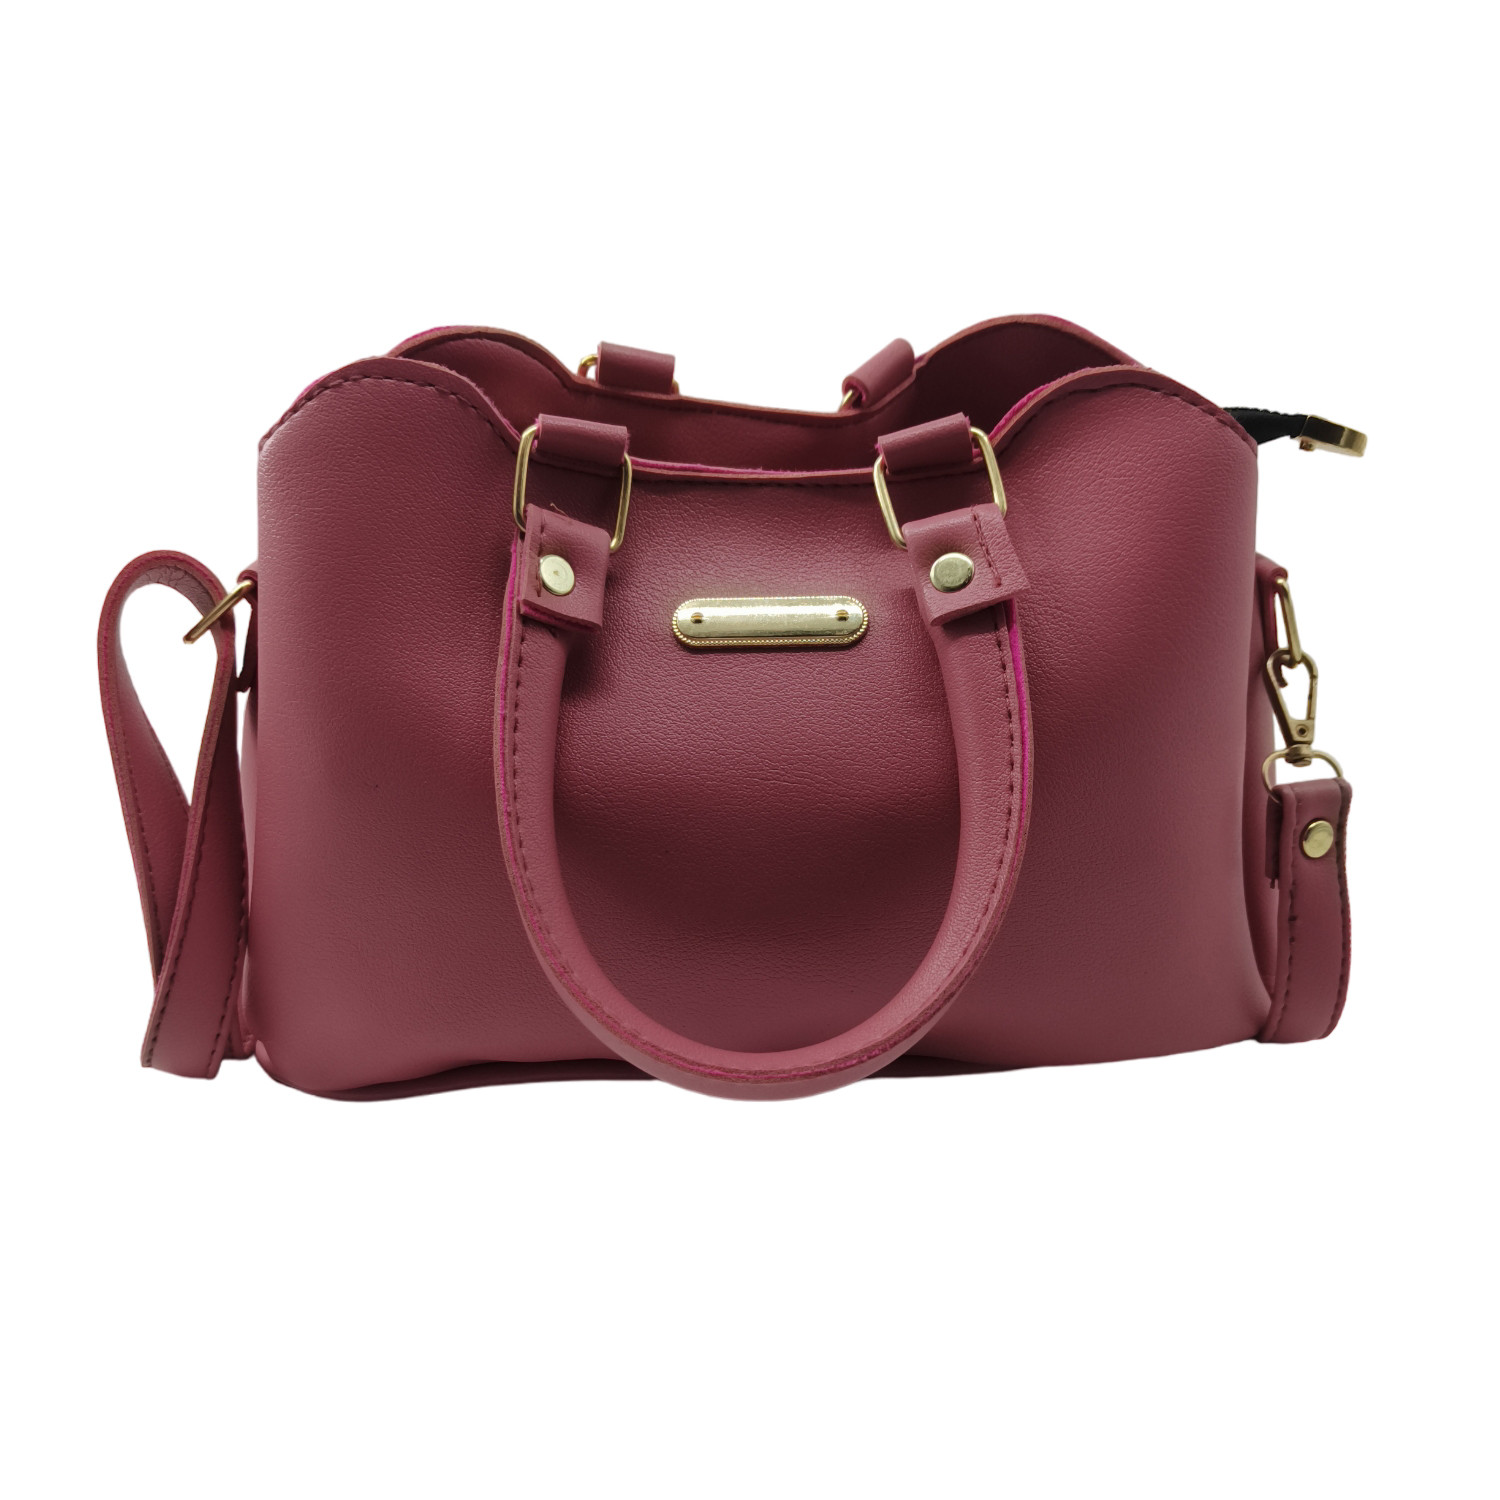 Buy Bellissa Black Solid Medium Shoulder Handbag Online At Best Price @  Tata CLiQ